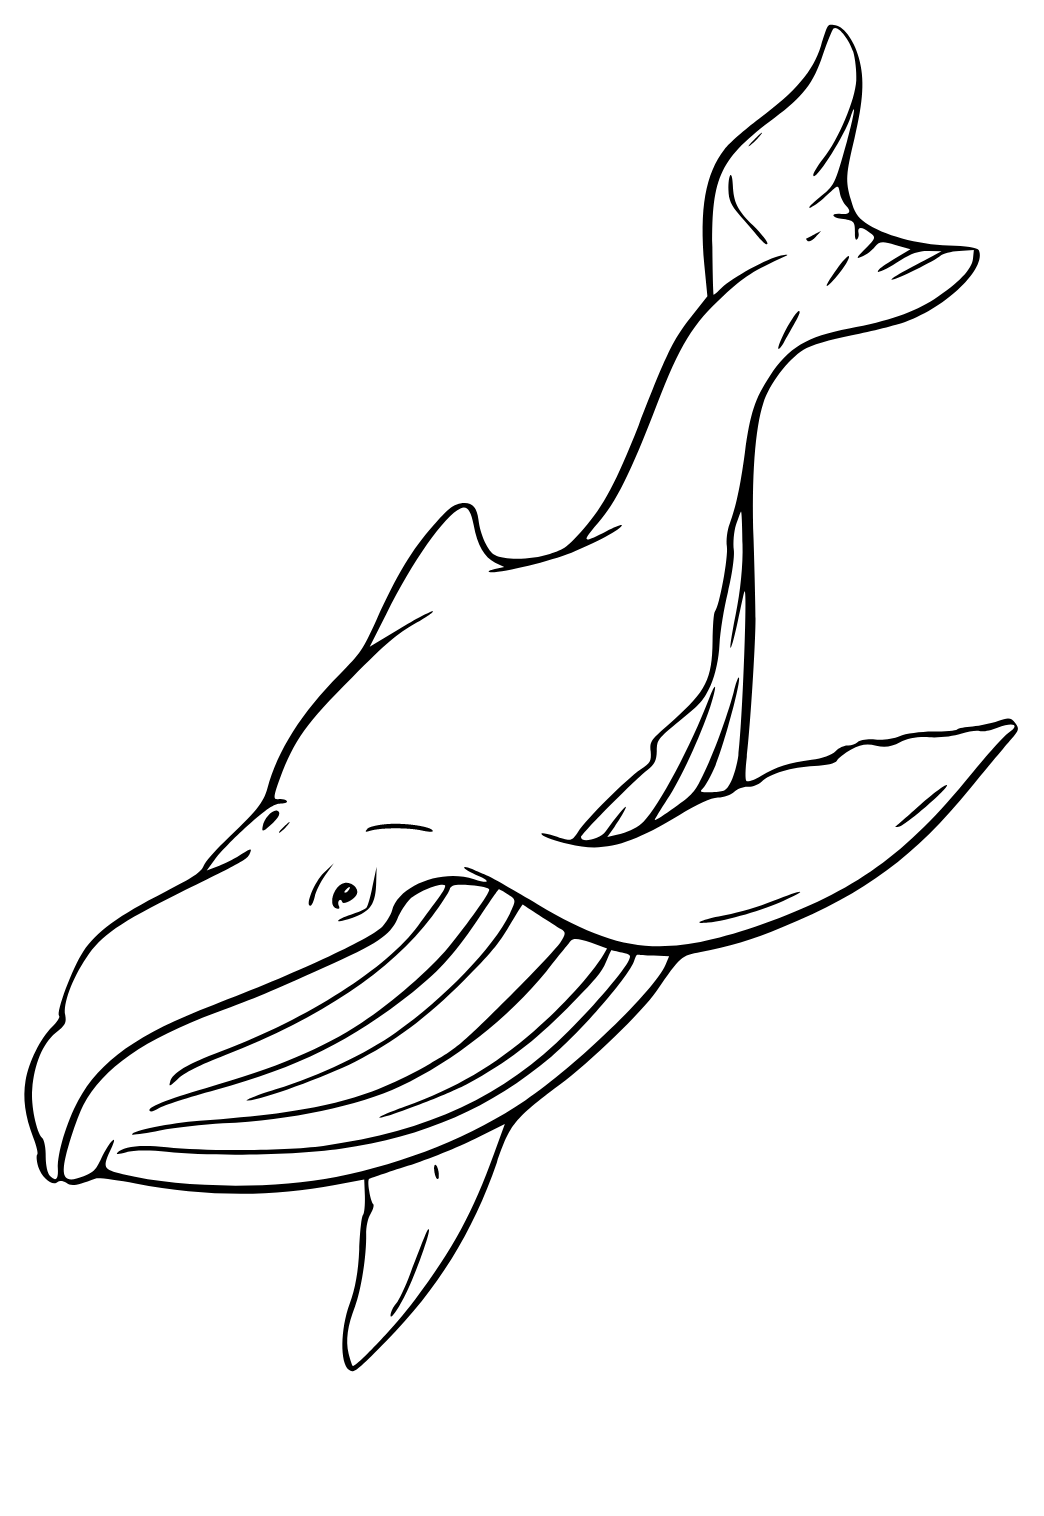 Desenho de Baleia para colorir  Desenhos para colorir e imprimir gratis